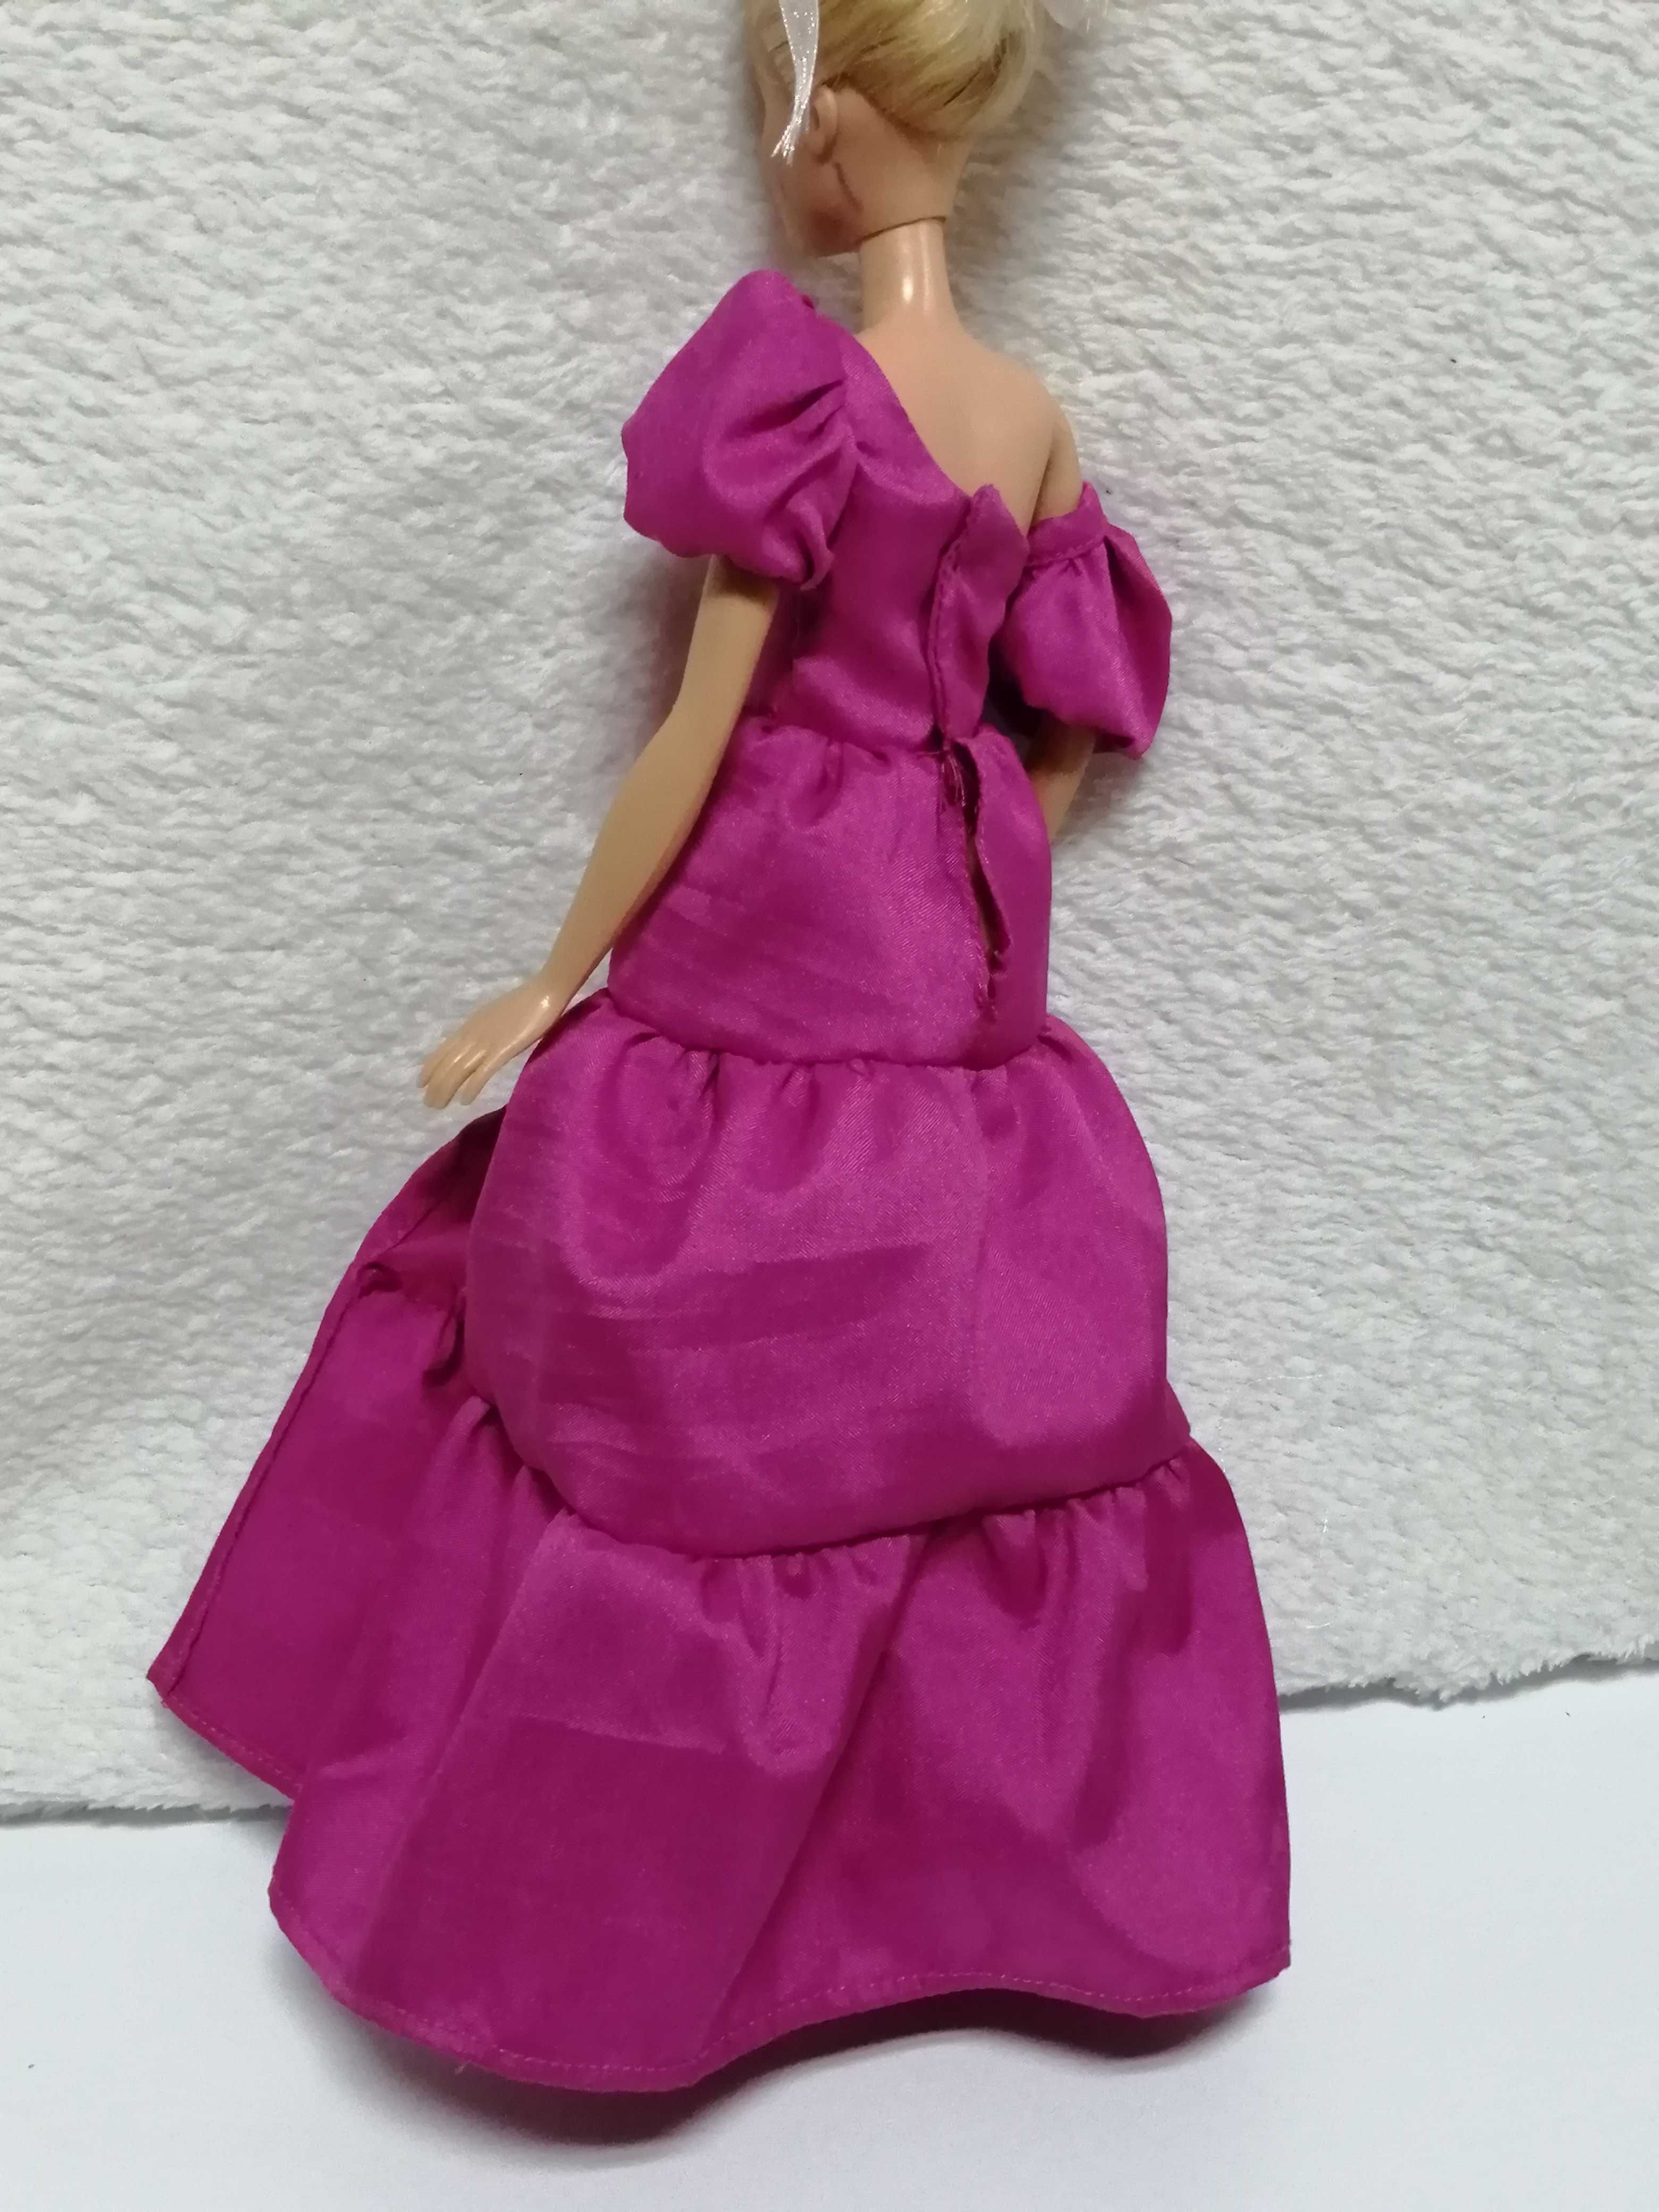 Roupa p/ Boneca - Vestido de gala para Barbie ou similar